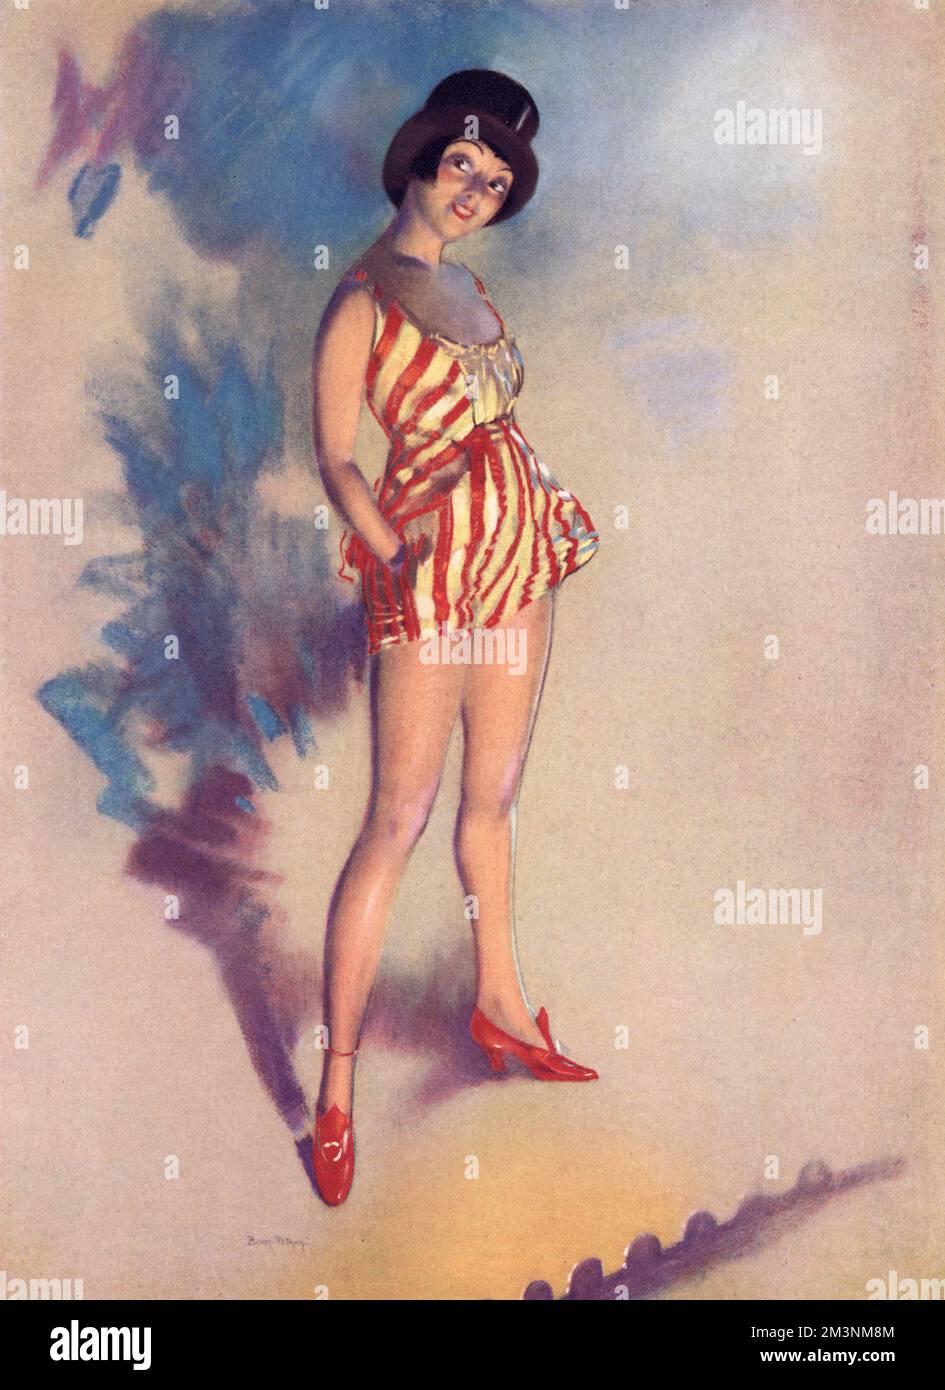 Une jolie actrice dans un chapeau haut montre ses jambes flatteuse sur scène. Le titre complet de l'illustration est : « The principal Boy - and a Real Topper too! » Par Hal Bevan Petman, connu pour les 'Petman Girls', il dessine en 1920s. Date: 1927 Banque D'Images